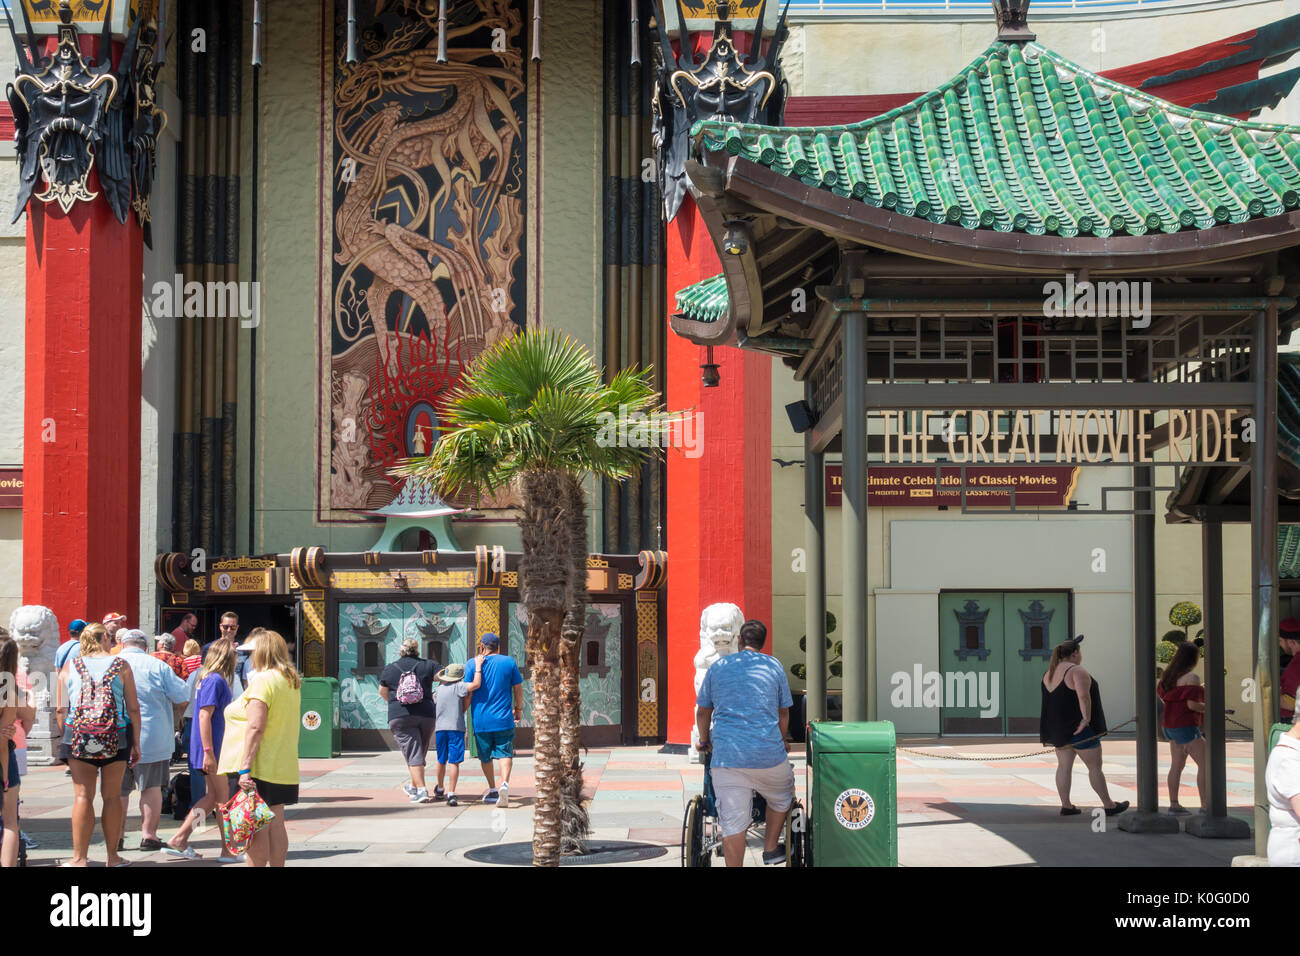 Le Chinese Theatre dans le centre vacancier Hollwood Studios Theme Park, Orlando, Floride. Banque D'Images